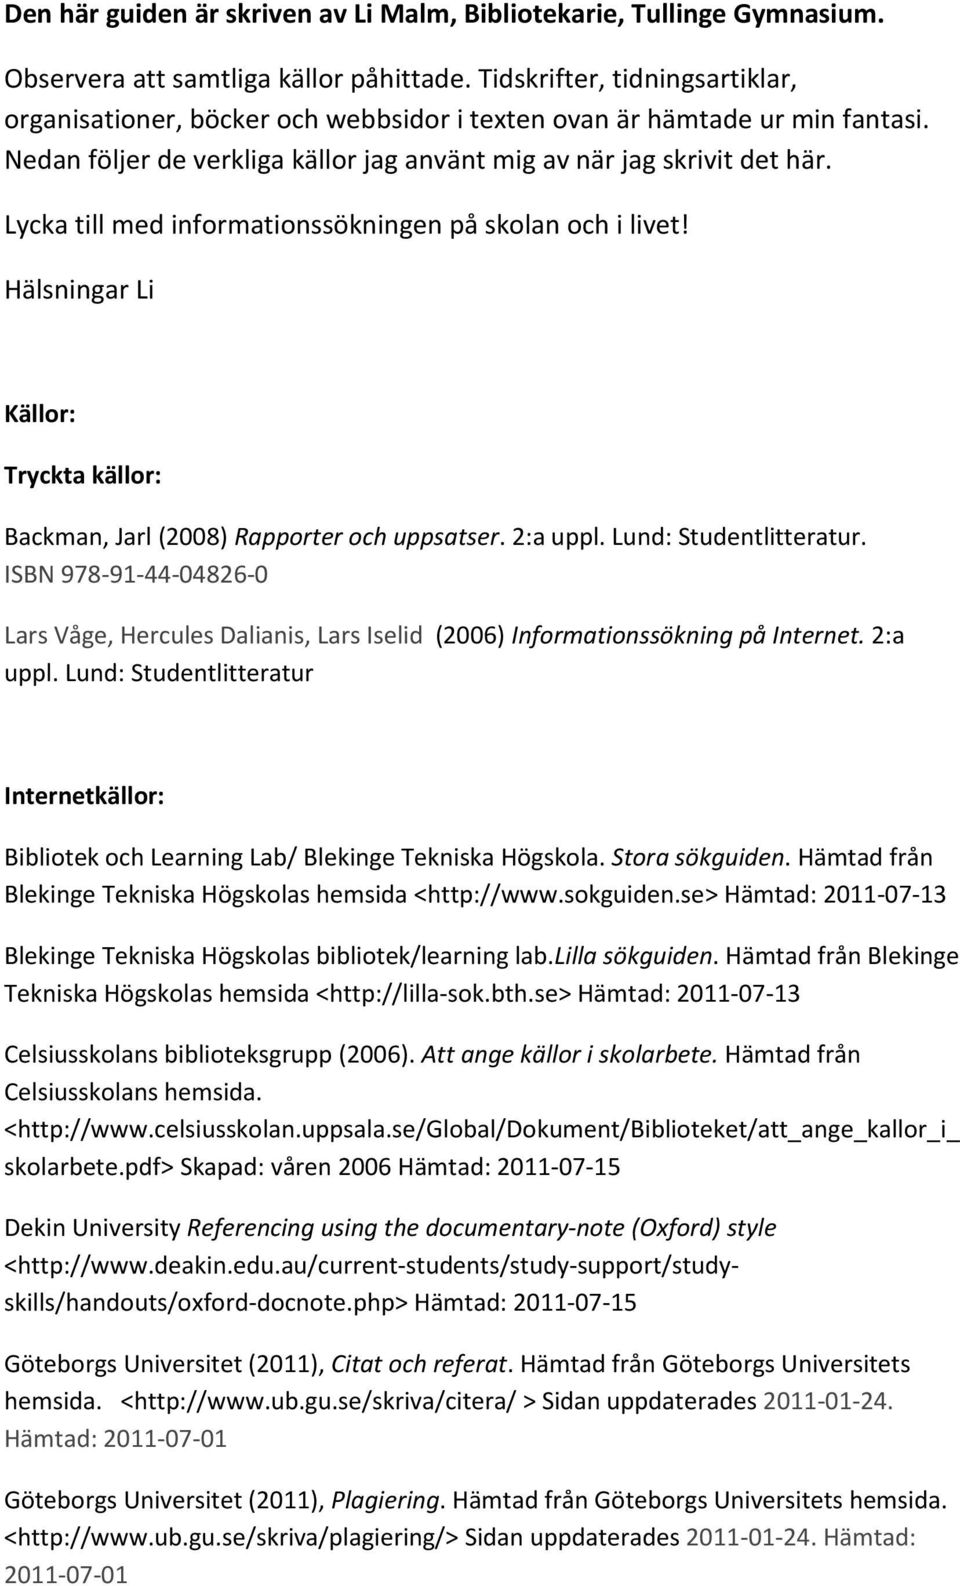 Lycka till med informationssökningen på skolan och i livet! Hälsningar Li Källor: Tryckta källor: Backman, Jarl (2008) Rapporter och uppsatser. 2:a uppl. Lund: Studentlitteratur.